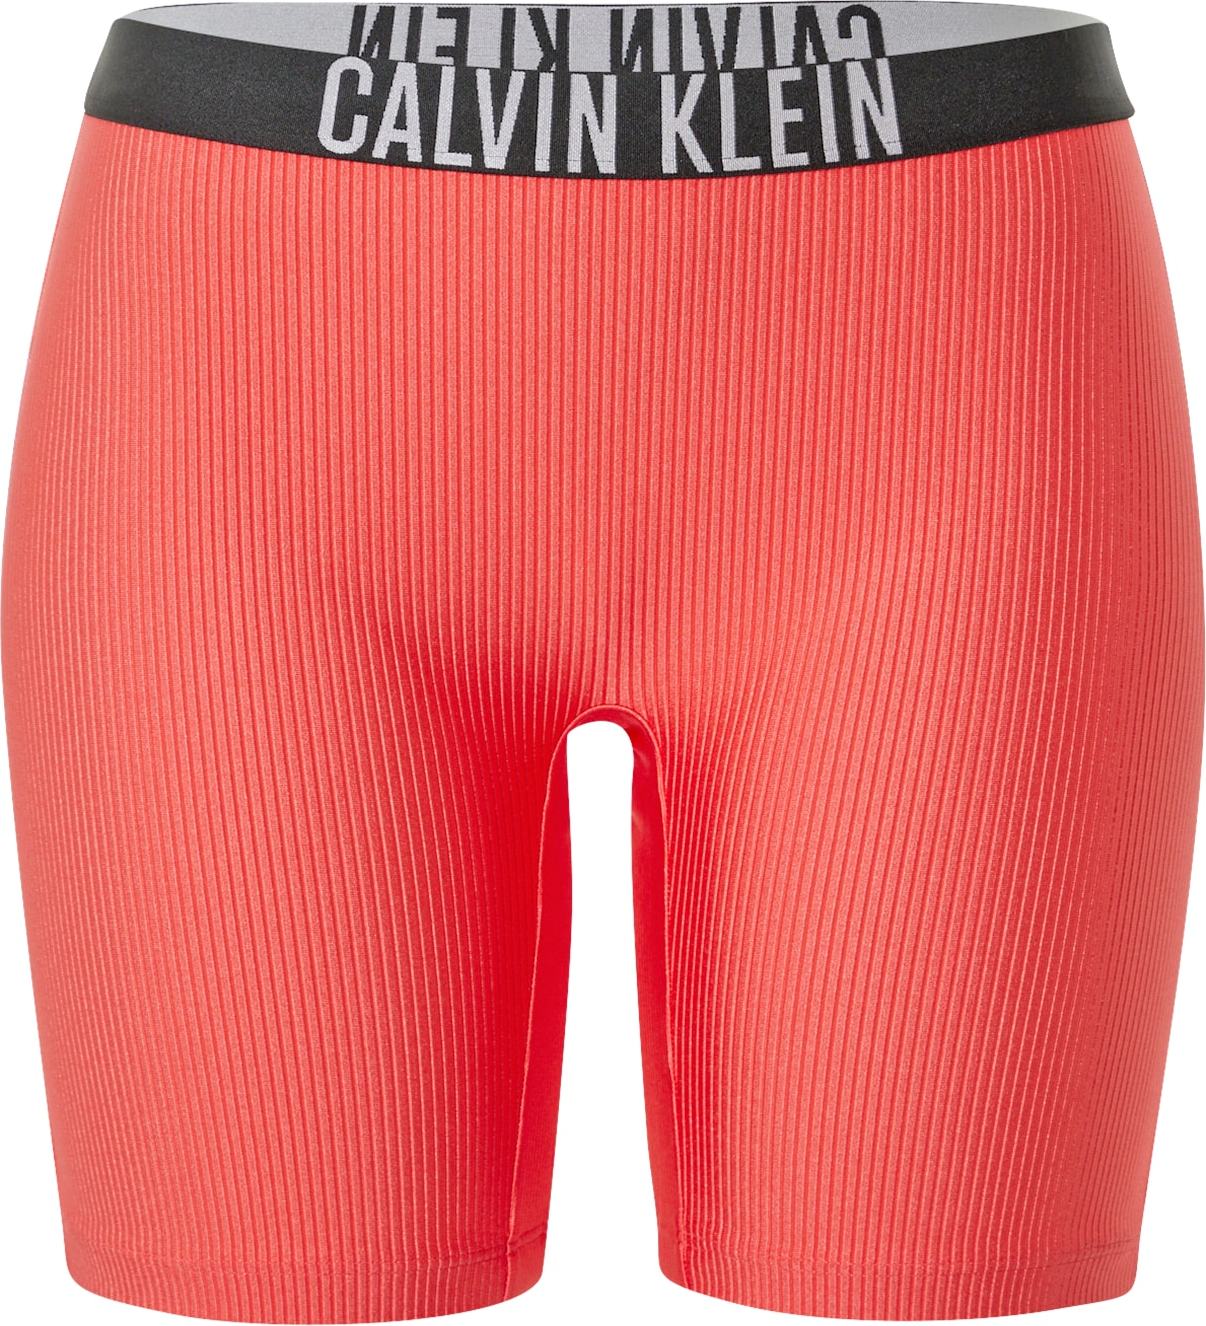 Calvin Klein Swimwear Spodní díl plavek melounová / černá / bílá